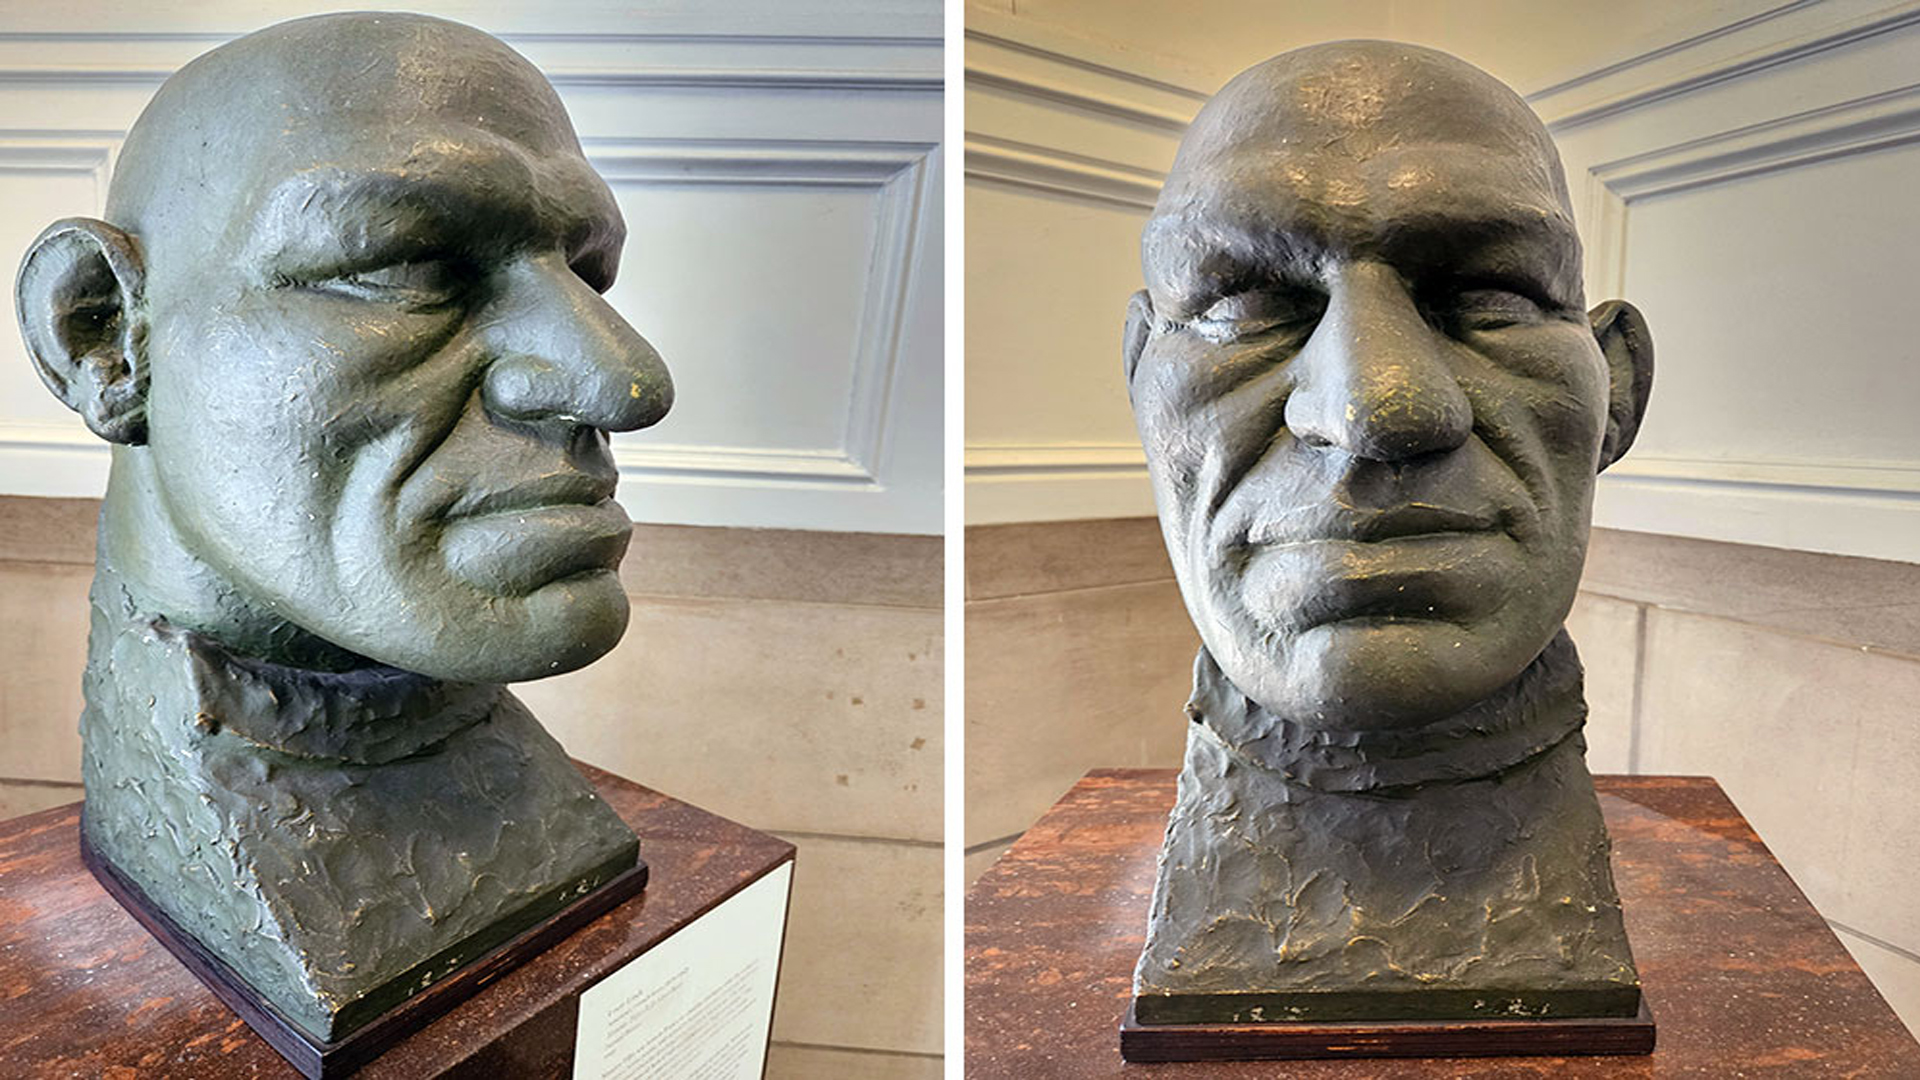 Maurice Tillet, inspiración de Shrek, busto en un museo